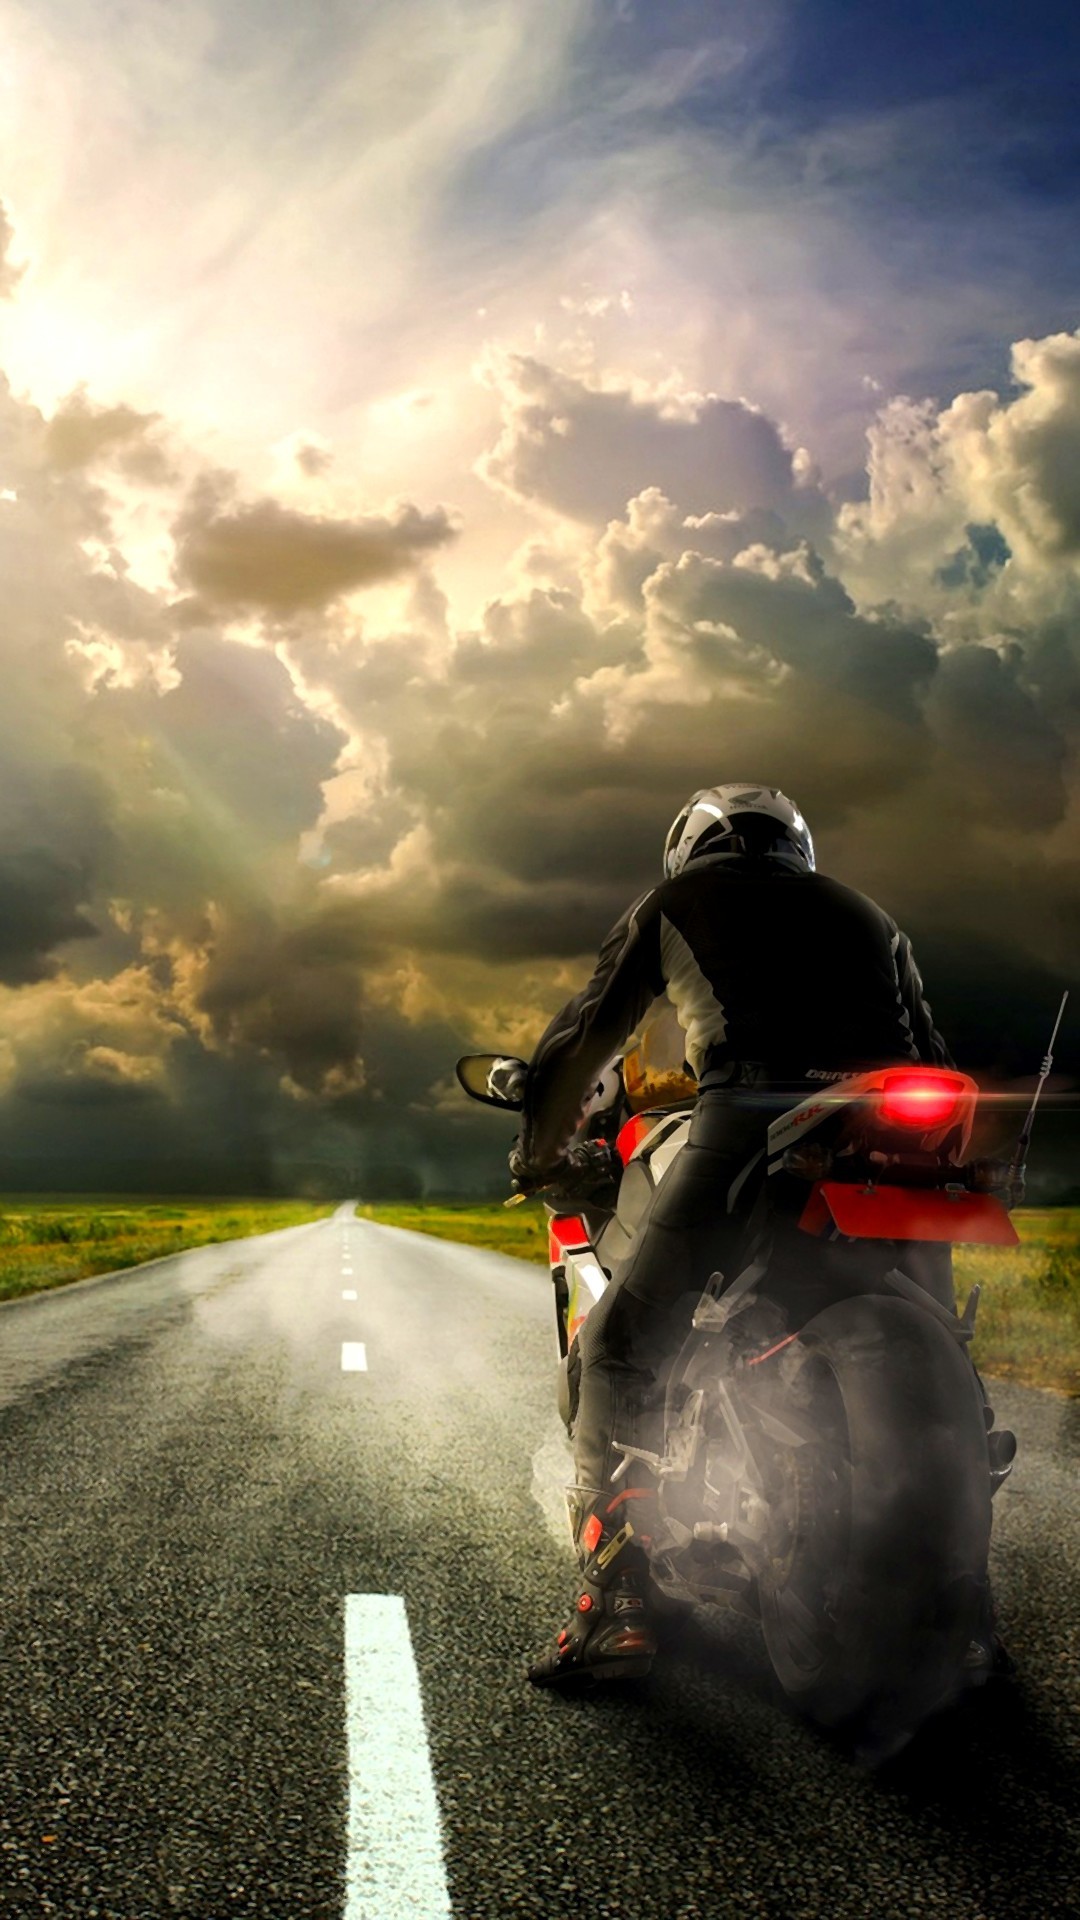 オートバイの壁紙,道路,オートバイ,モーターサイクリング,アスファルト,空